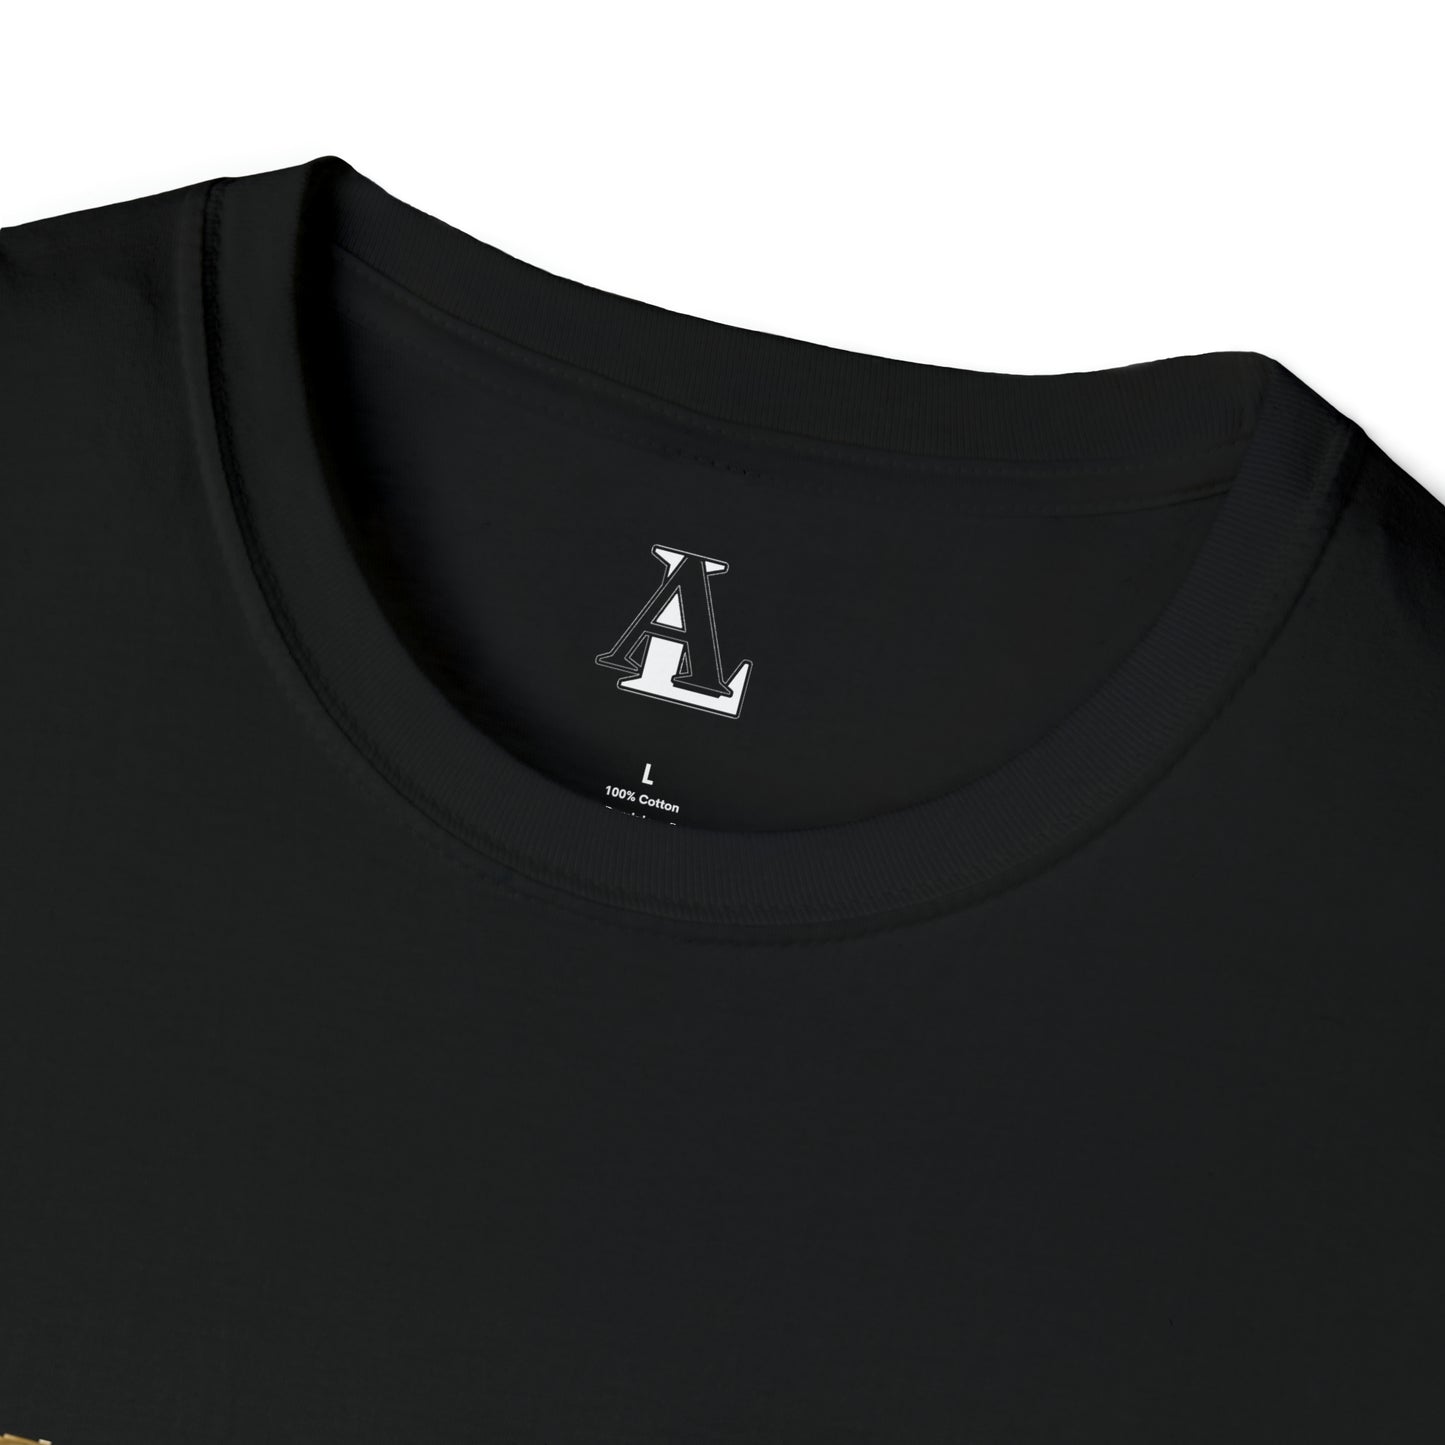 Amir LaVie - T-Shirt